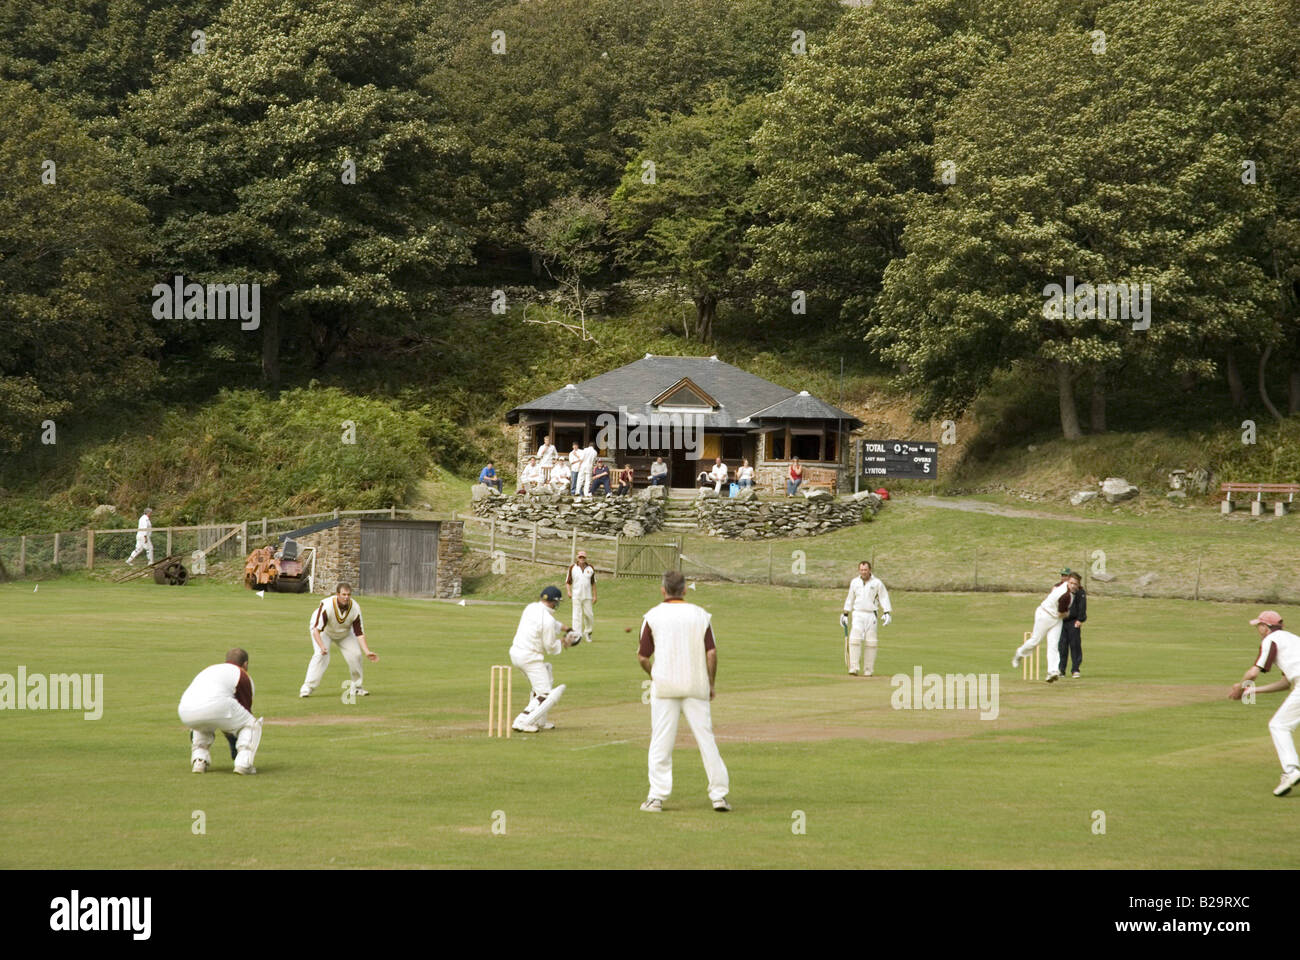 Dorf Cricket Exmoor Devon England Ref WP See 000653 0011 obligatorische CREDIT Welt Bilder Photoshot Stockfoto